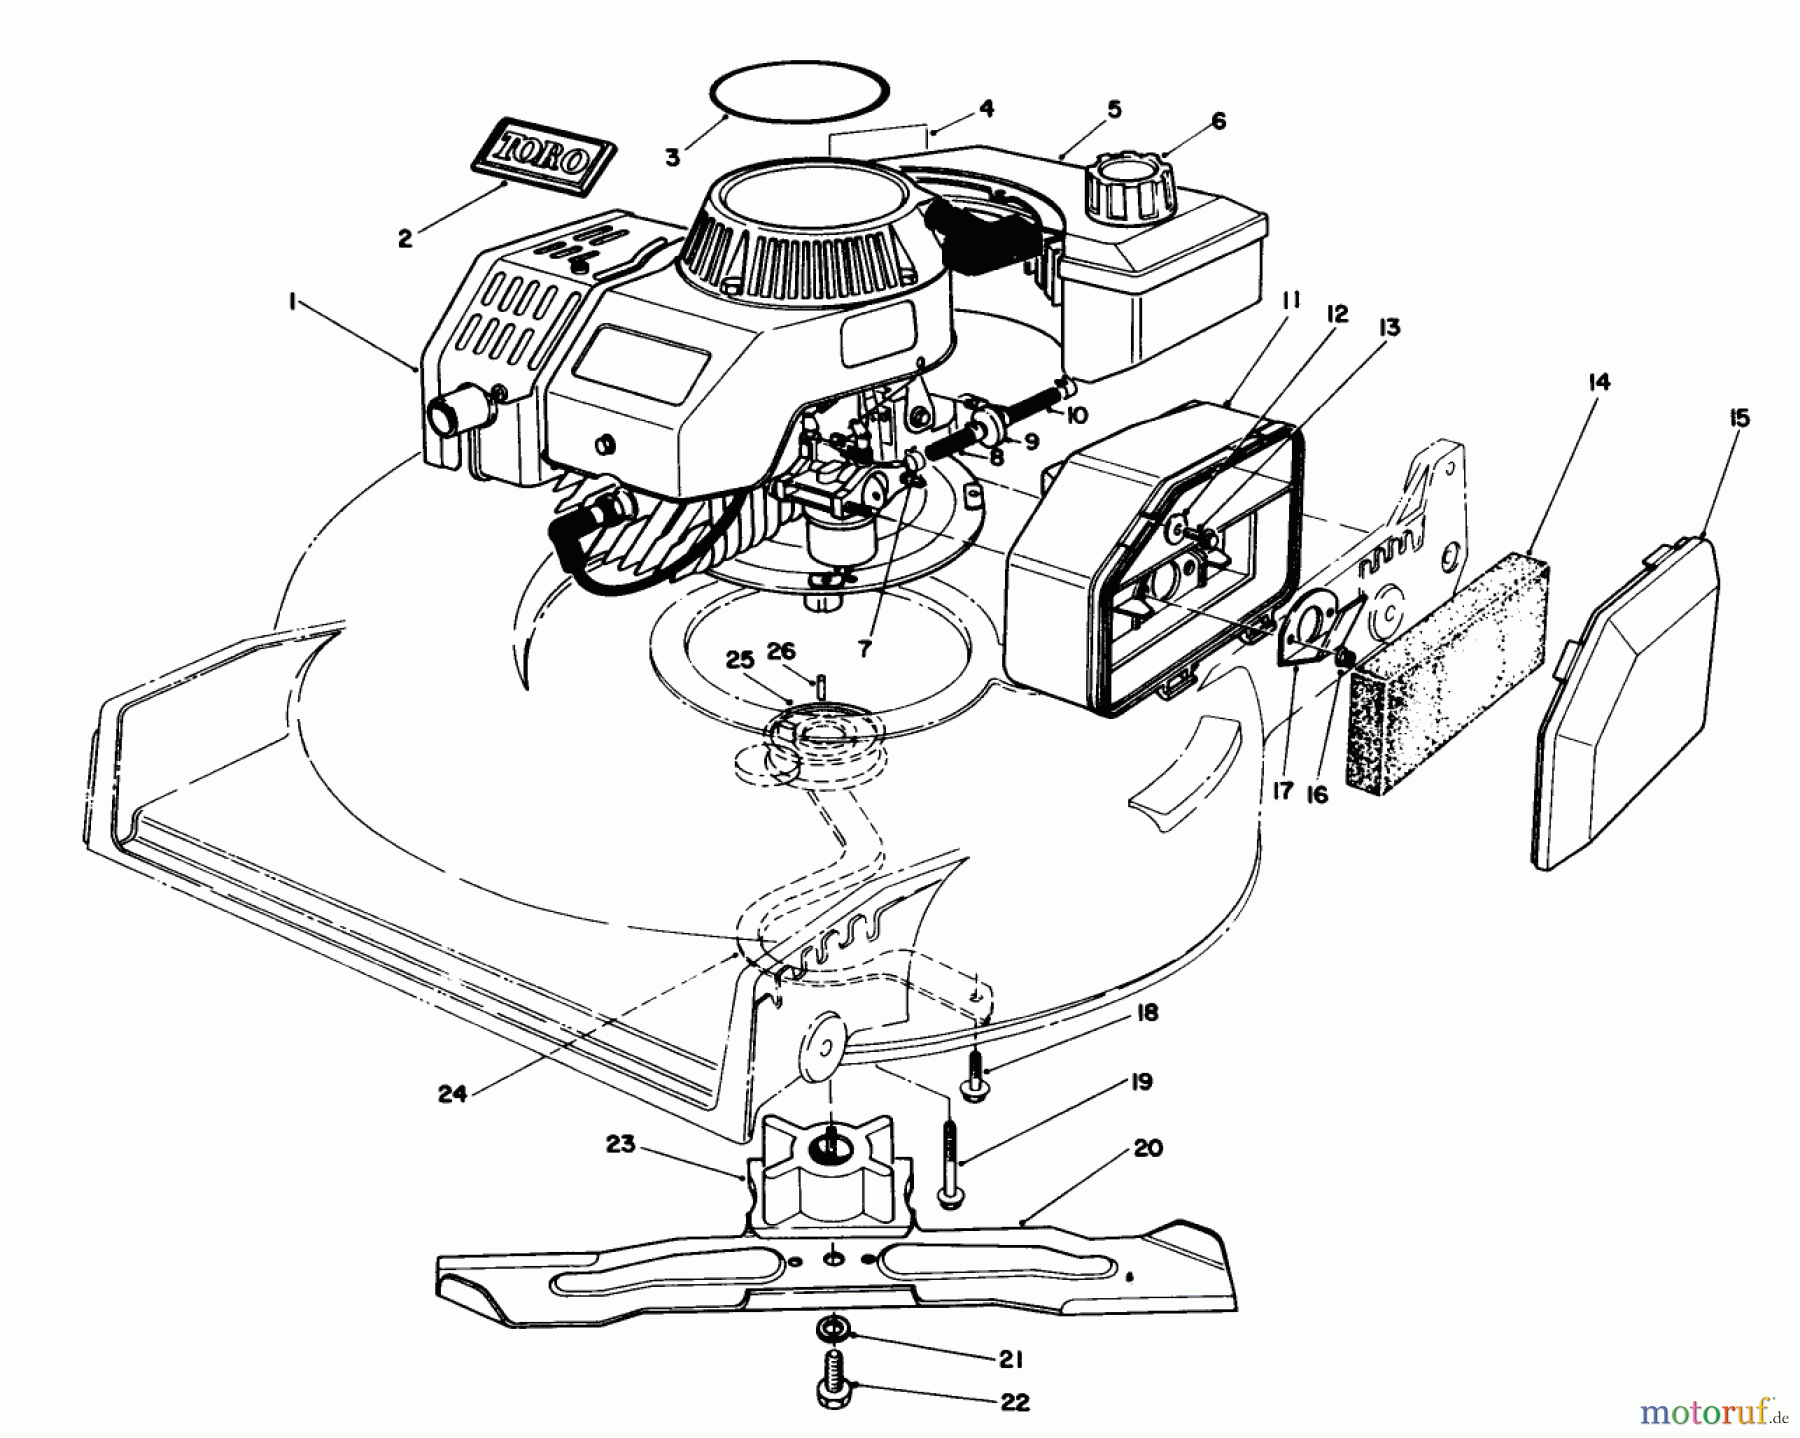  Toro Neu Mowers, Walk-Behind Seite 1 20747C - Toro Lawnmower, 1987 (7000001-7999999) ENGINE ASSEMBLY (MODEL NO. 47PG6)